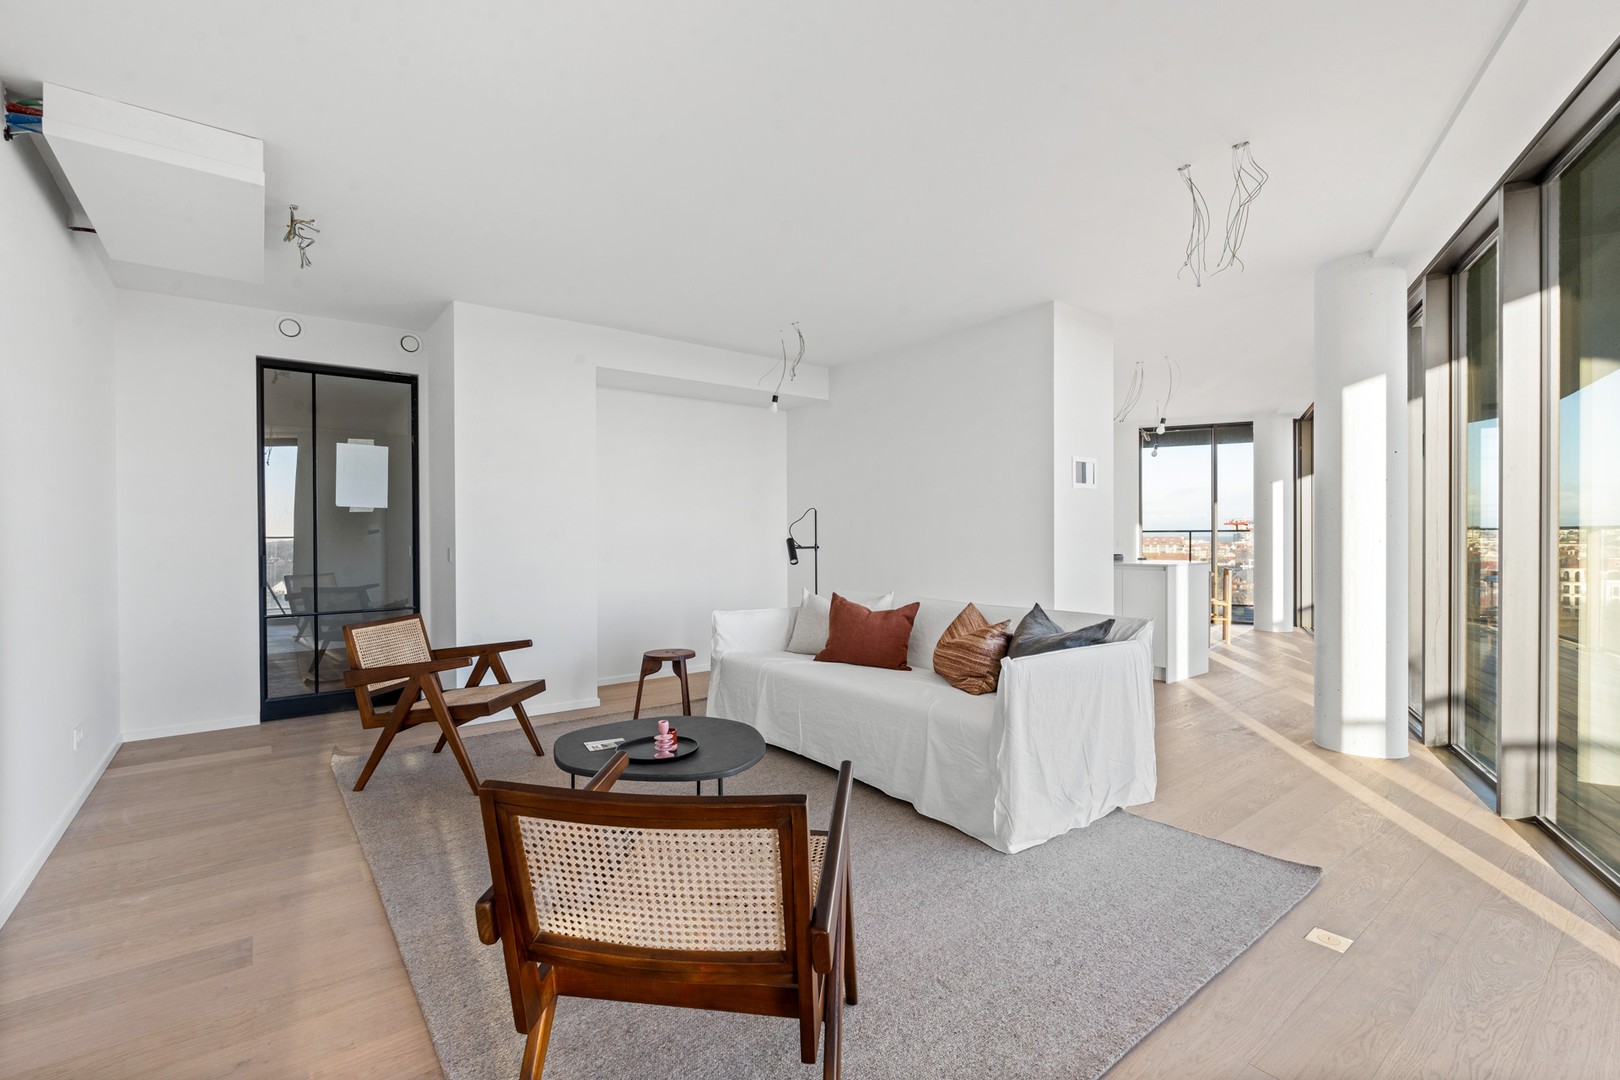 Te koop Knokke Real Estate appartement met fantastisch zicht